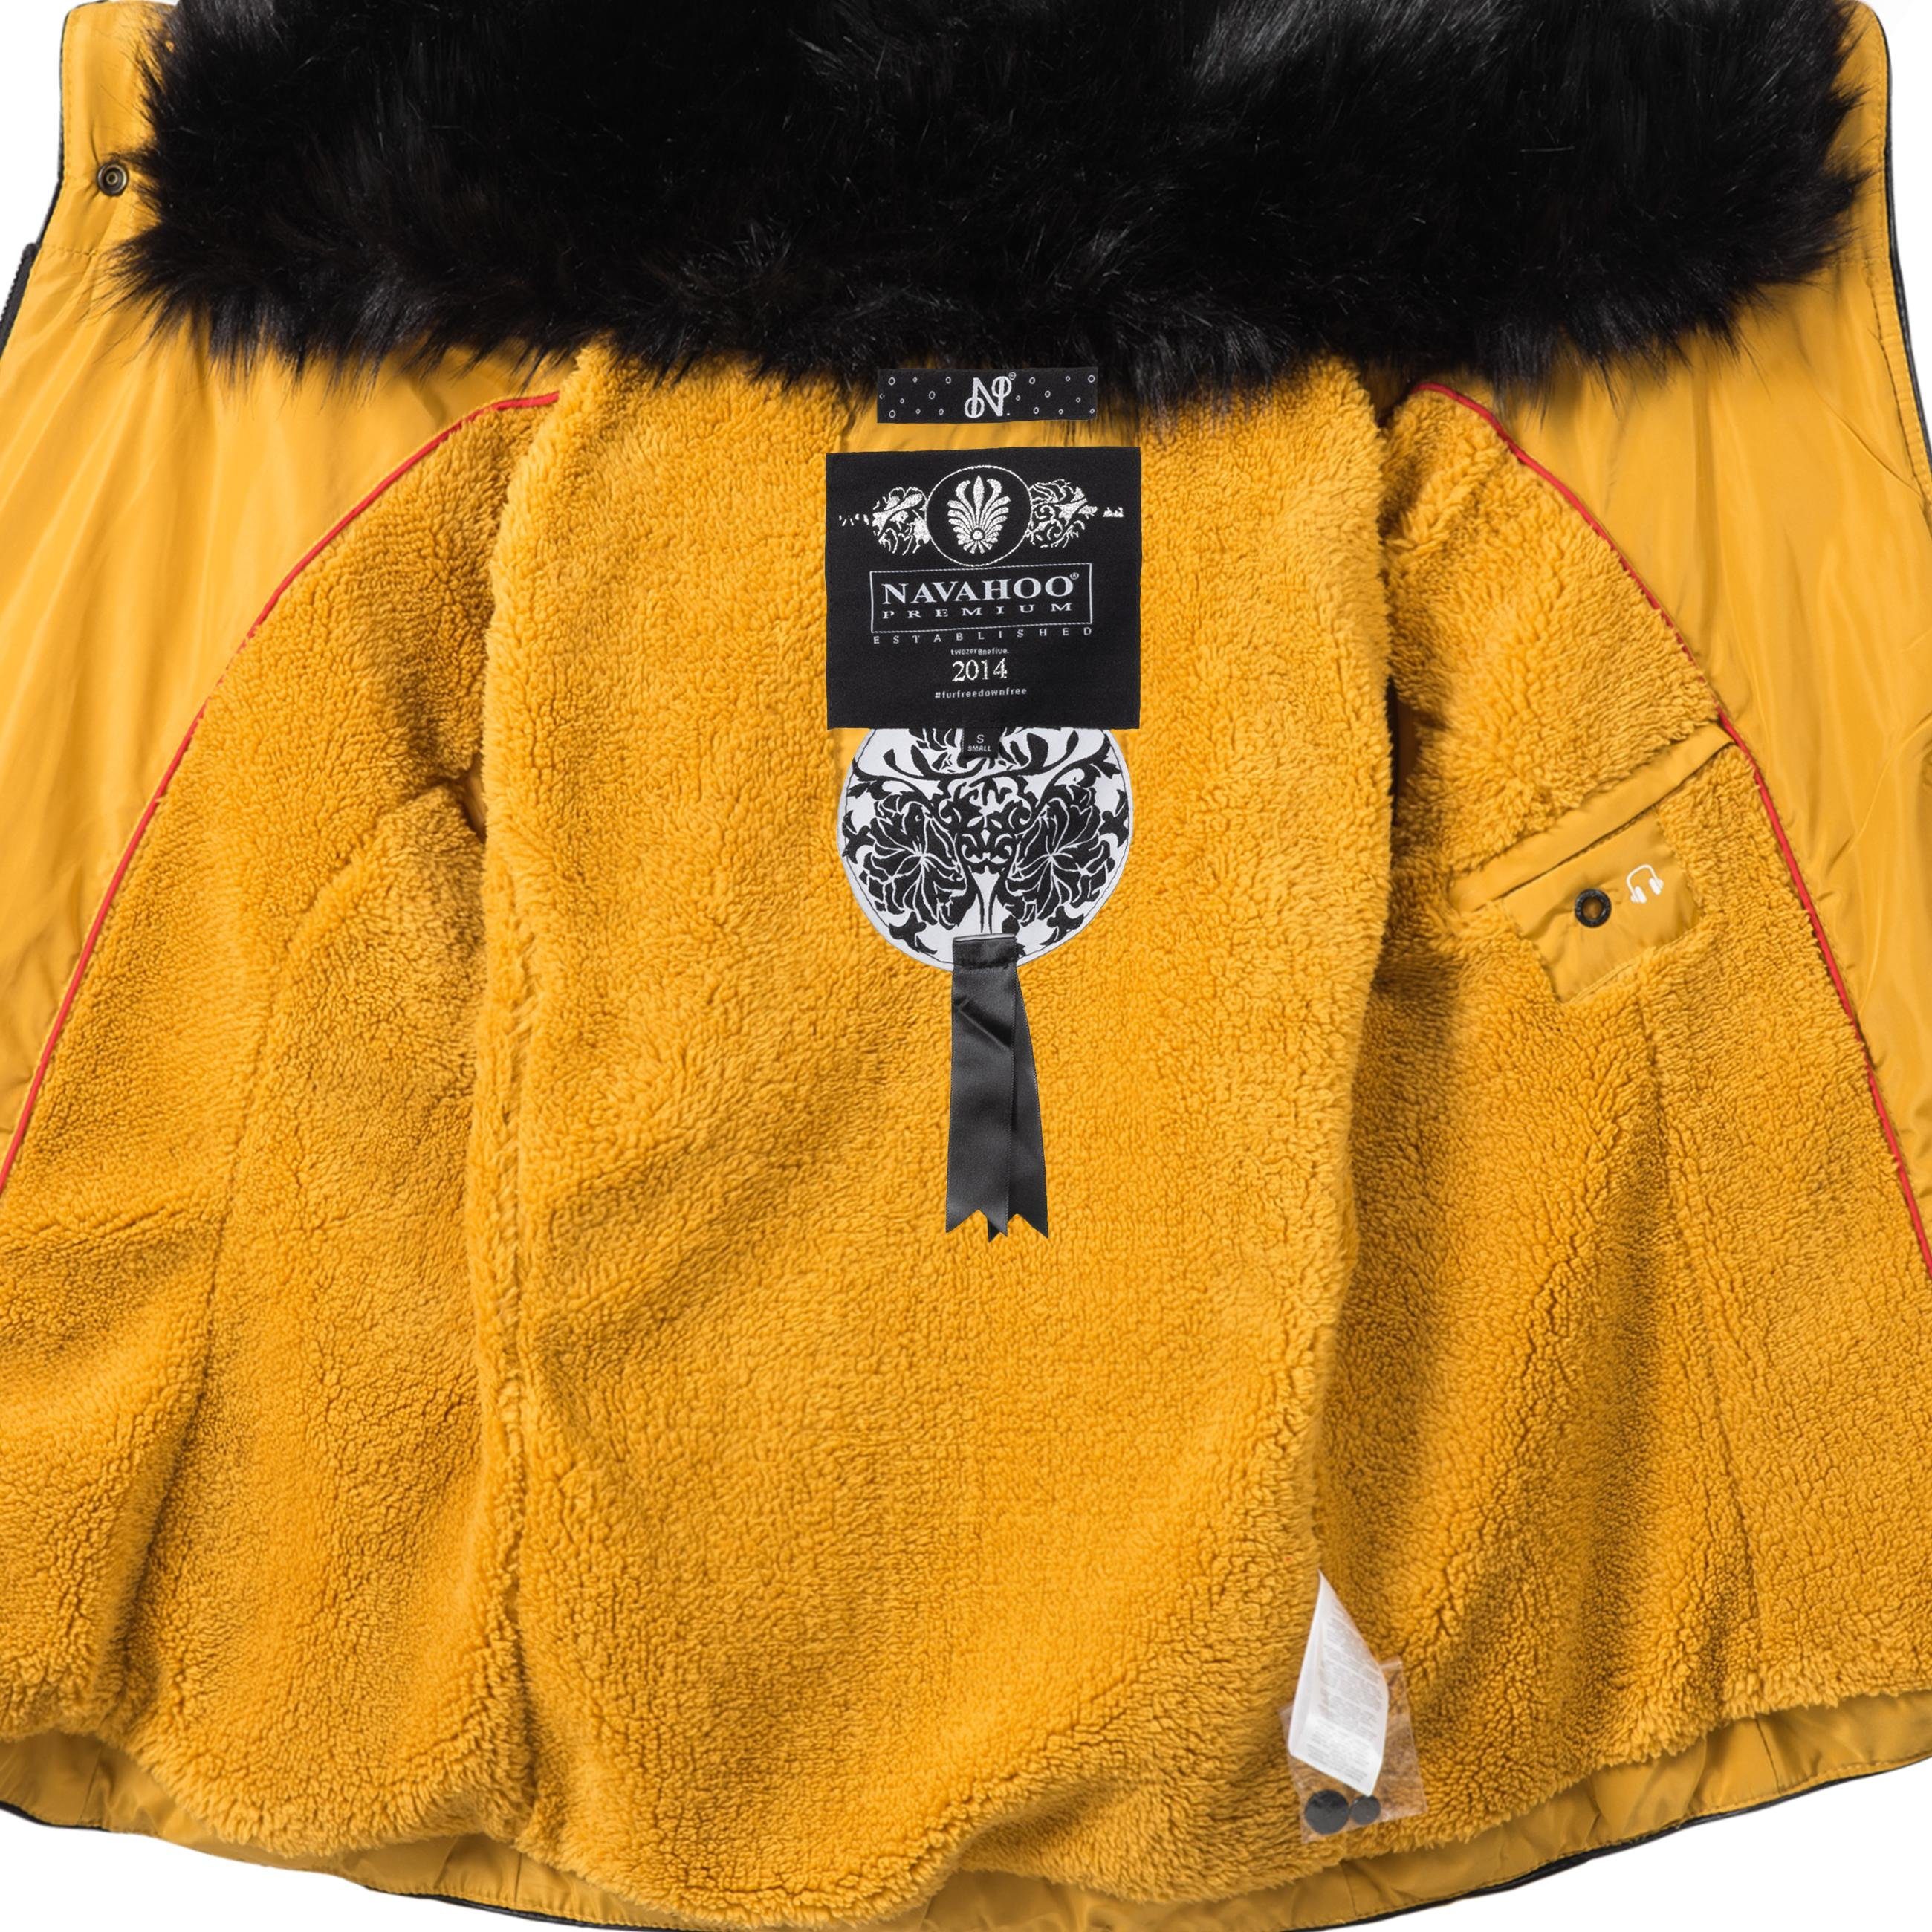 Navahoo Steppjacke Yuki2 stylische edlem Winterjacke Kunstfell-Kragen mit gelb